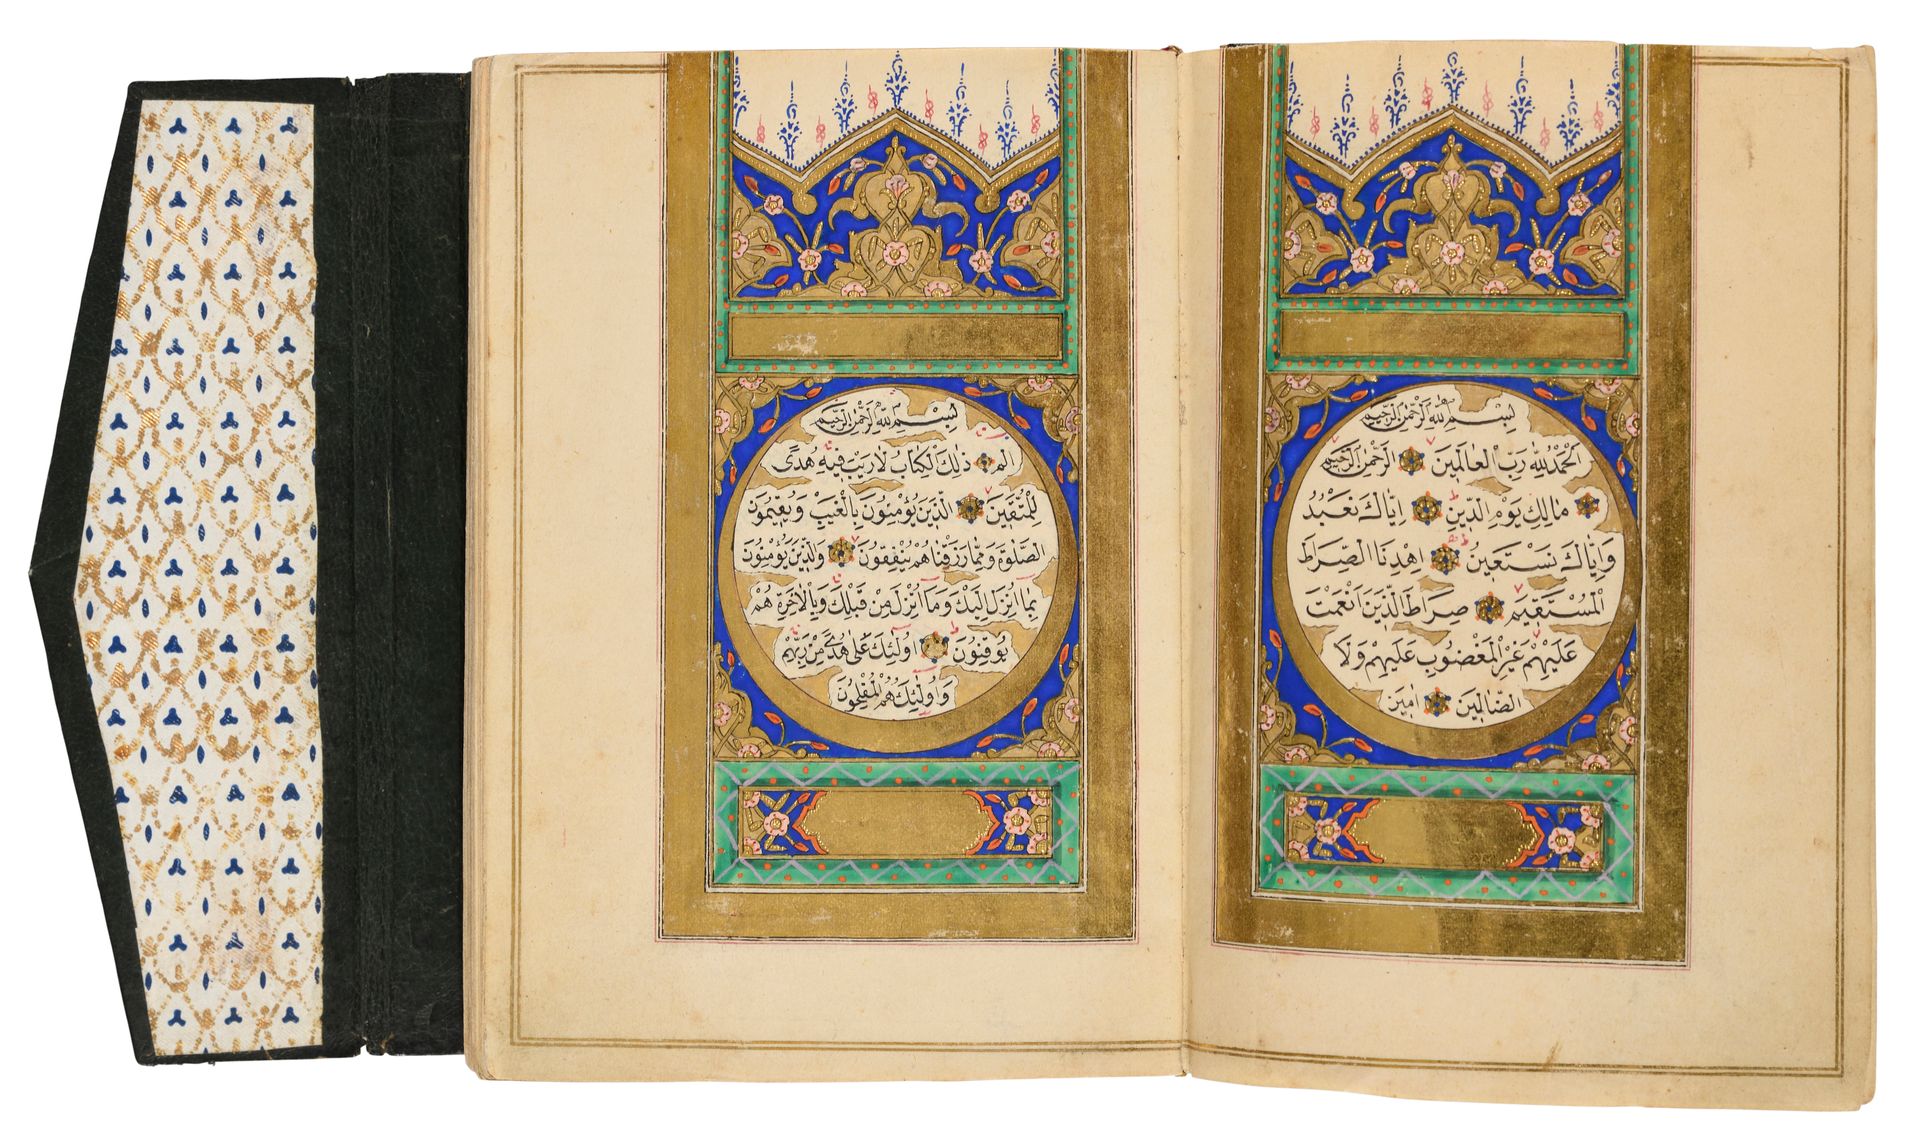 Coran d'époque ottomane Von 'Ali Al-Khulusi

Türkei, datiert 1279H. ('''=1862)

&hellip;